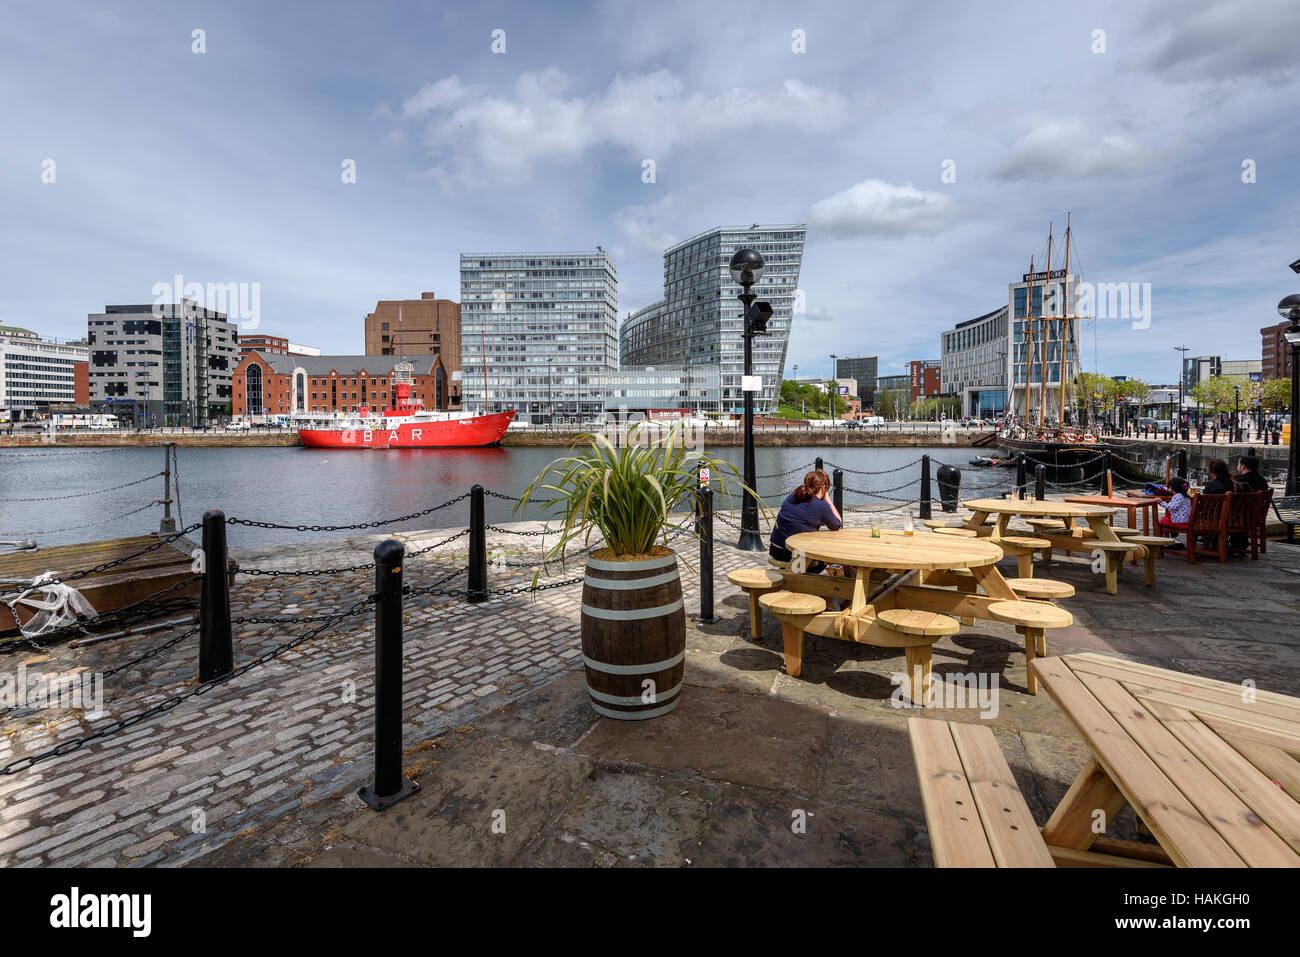 Liverpool Waterfront è un posto fantastico da visitare con tutta una serie di cose da fare in una vista mozzafiato e iconico impostazione. Foto Stock